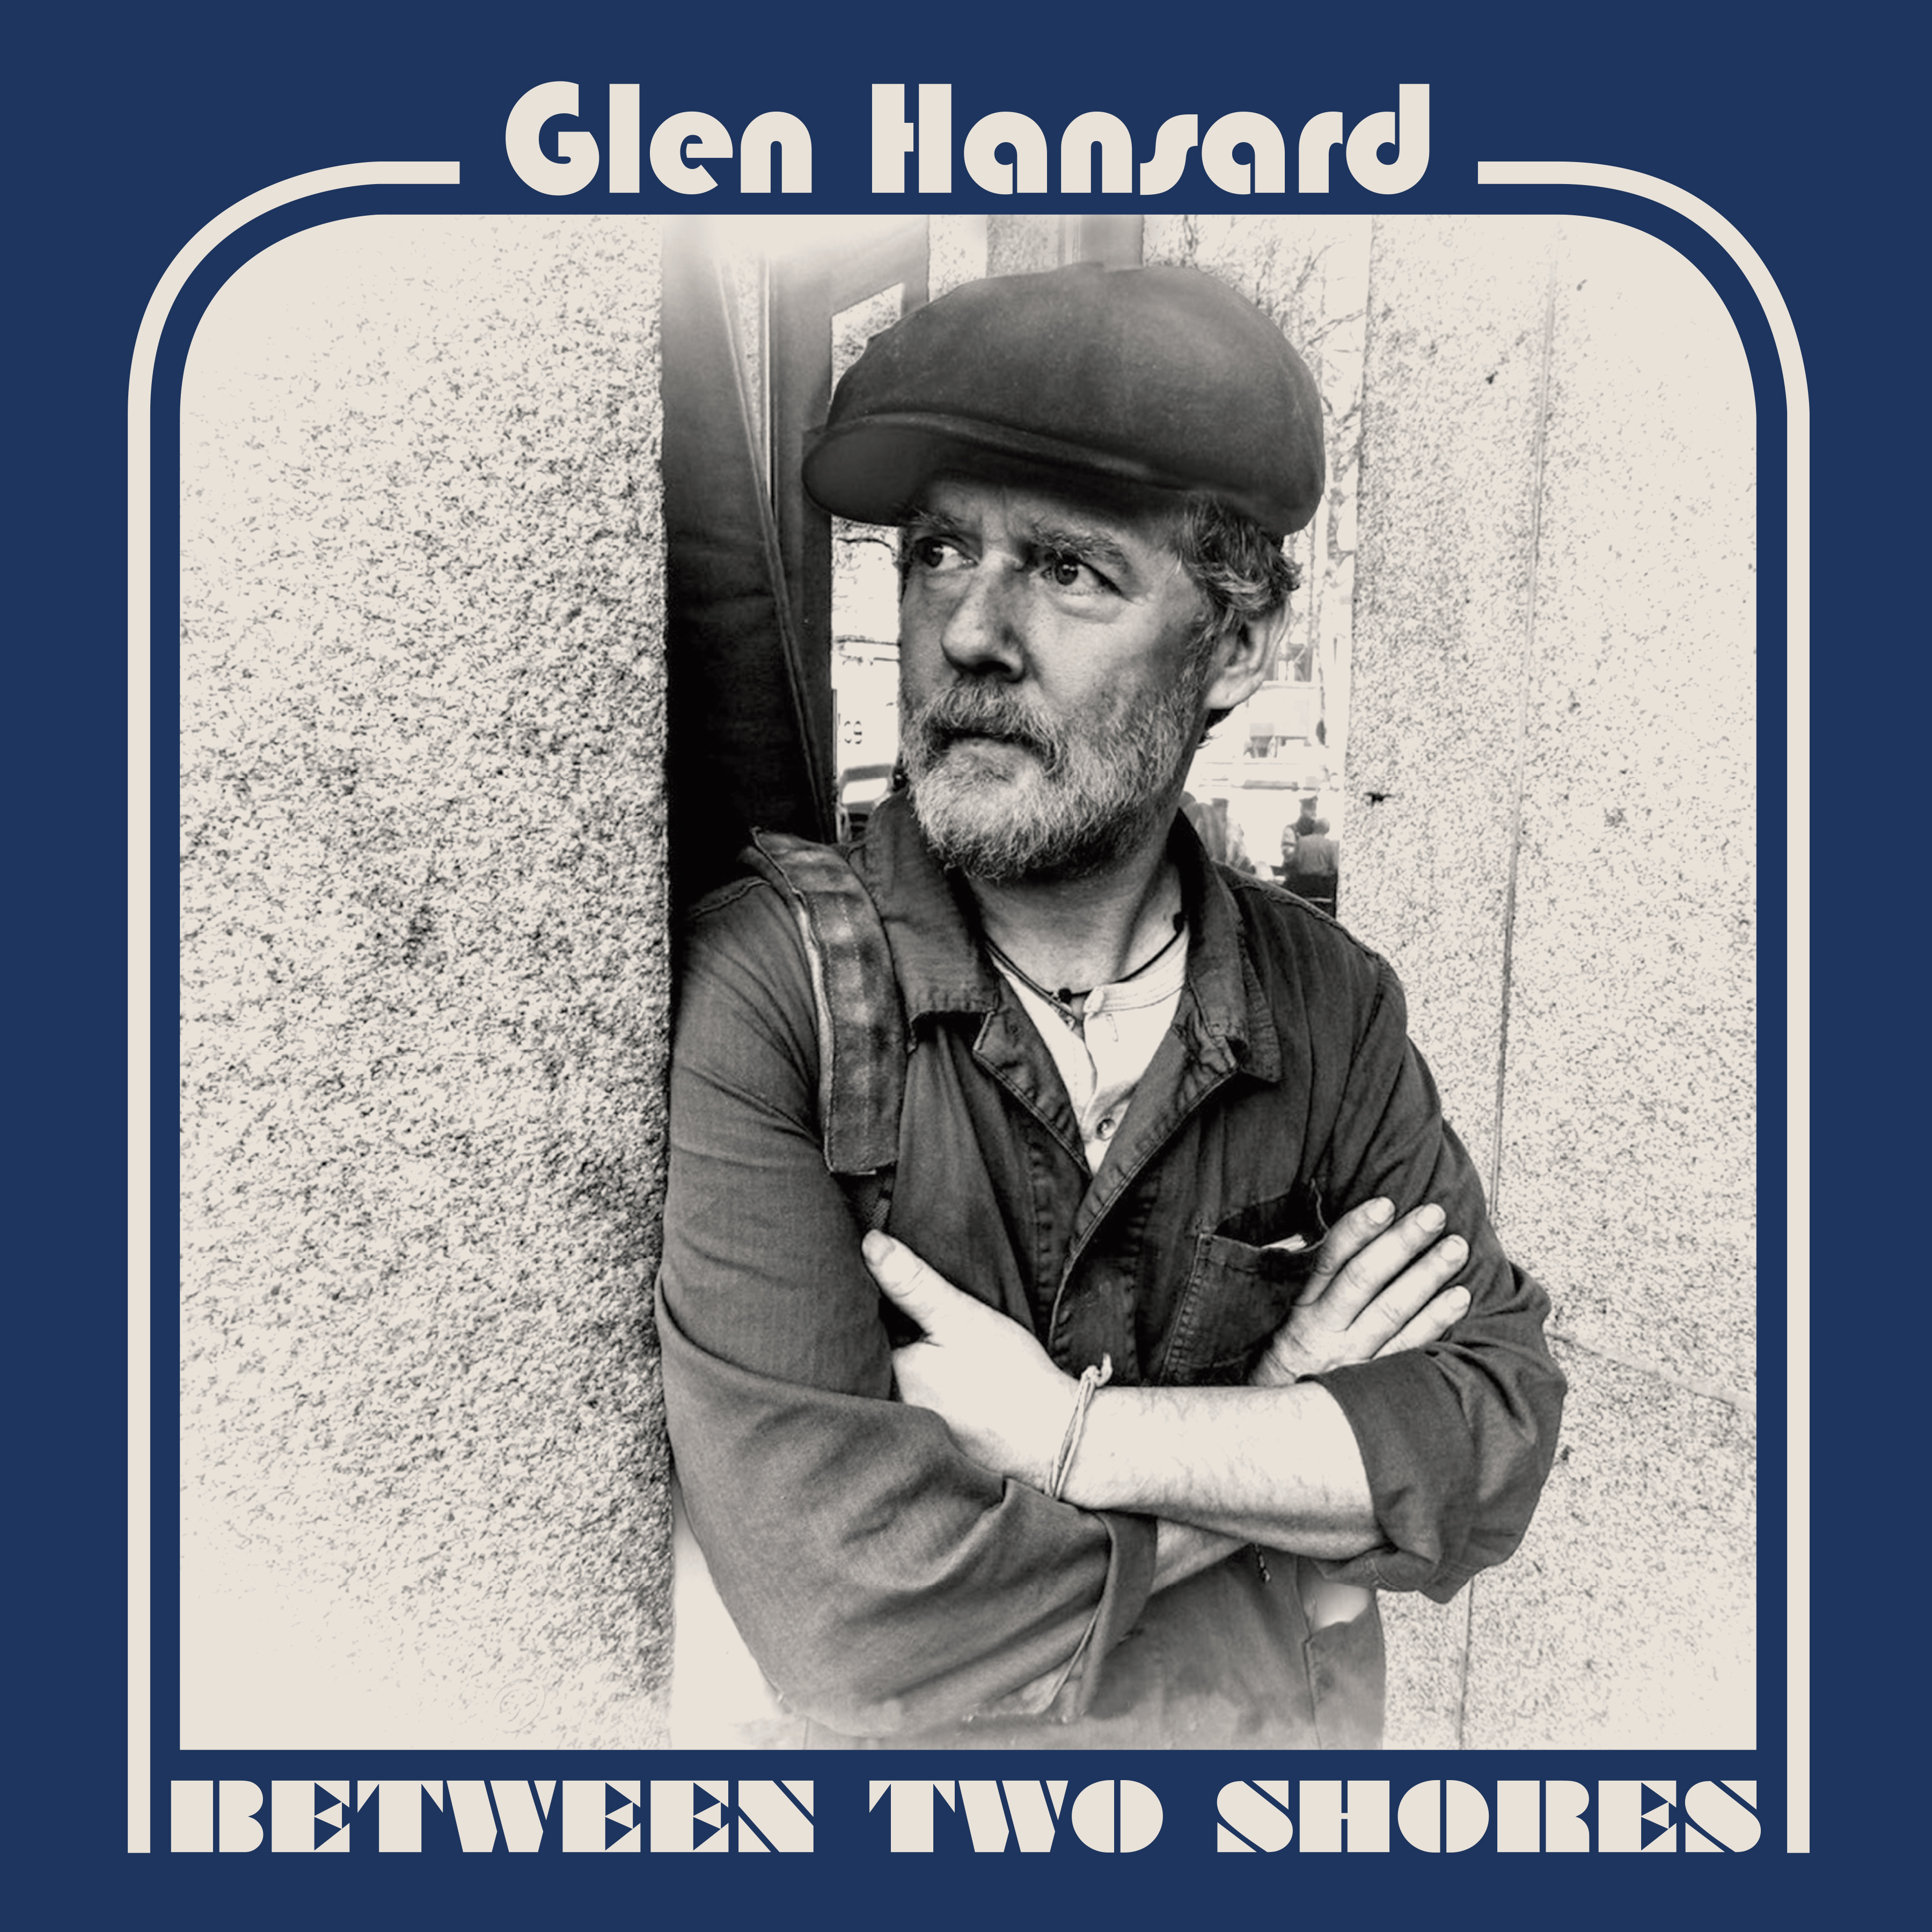 Glen Hansard - Between Two Shores - CD